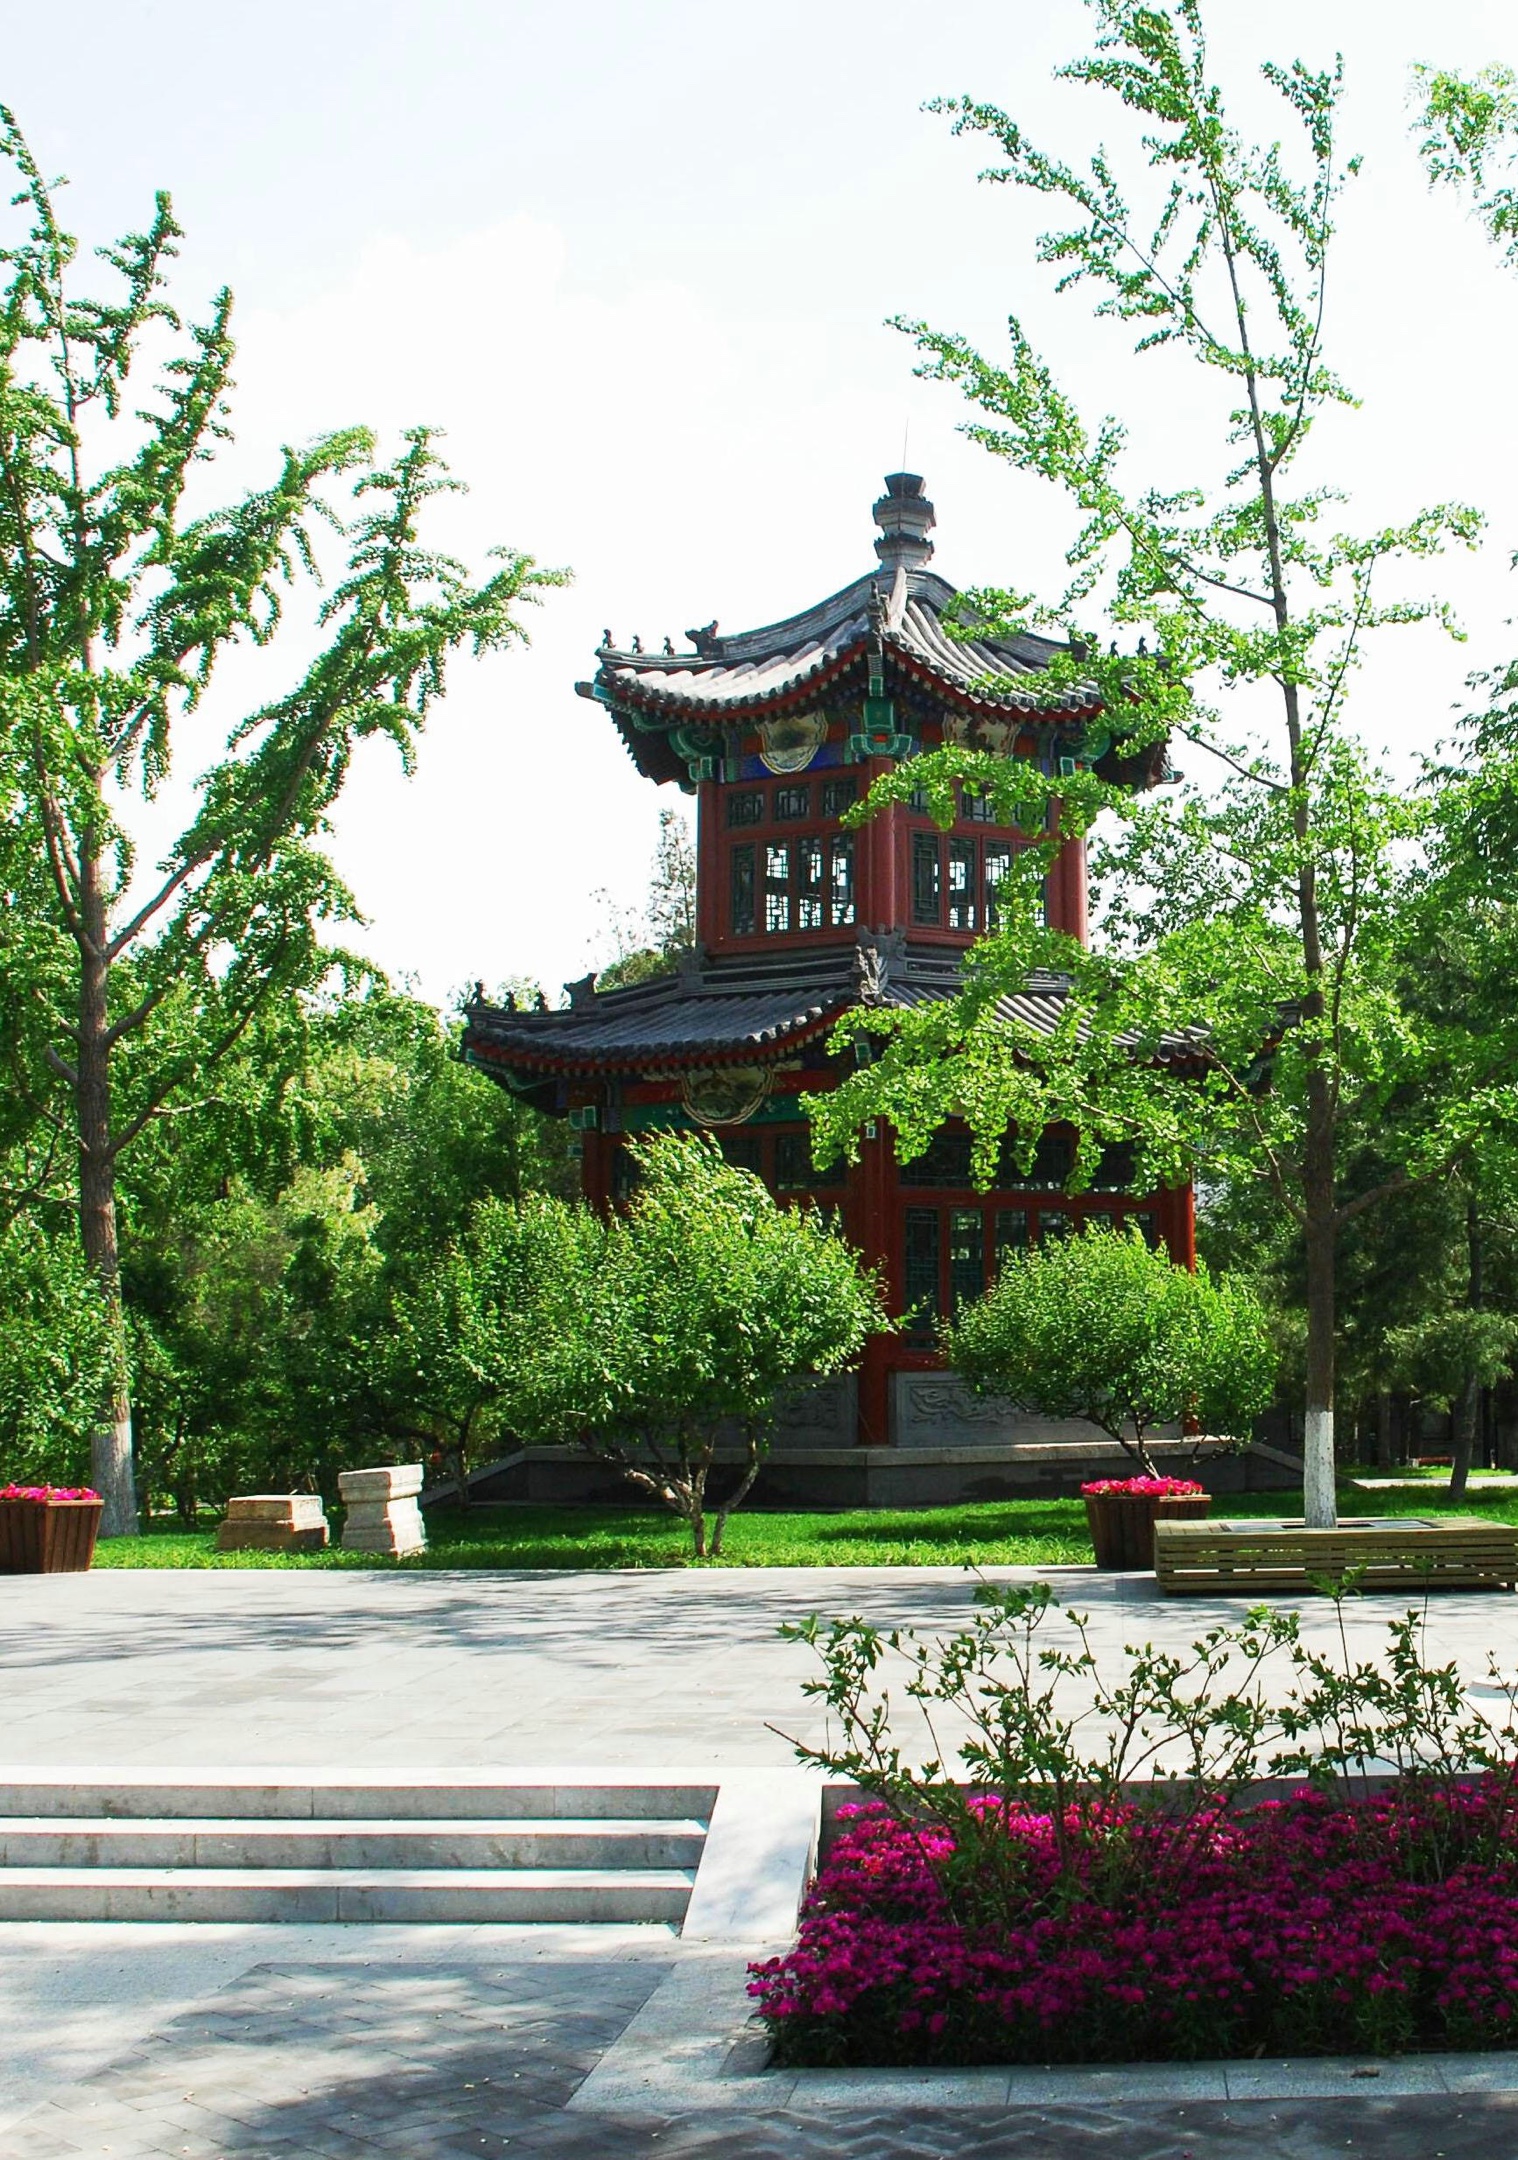 宣武艺园为免费公园,为北京市民提供一处休闲好去处.